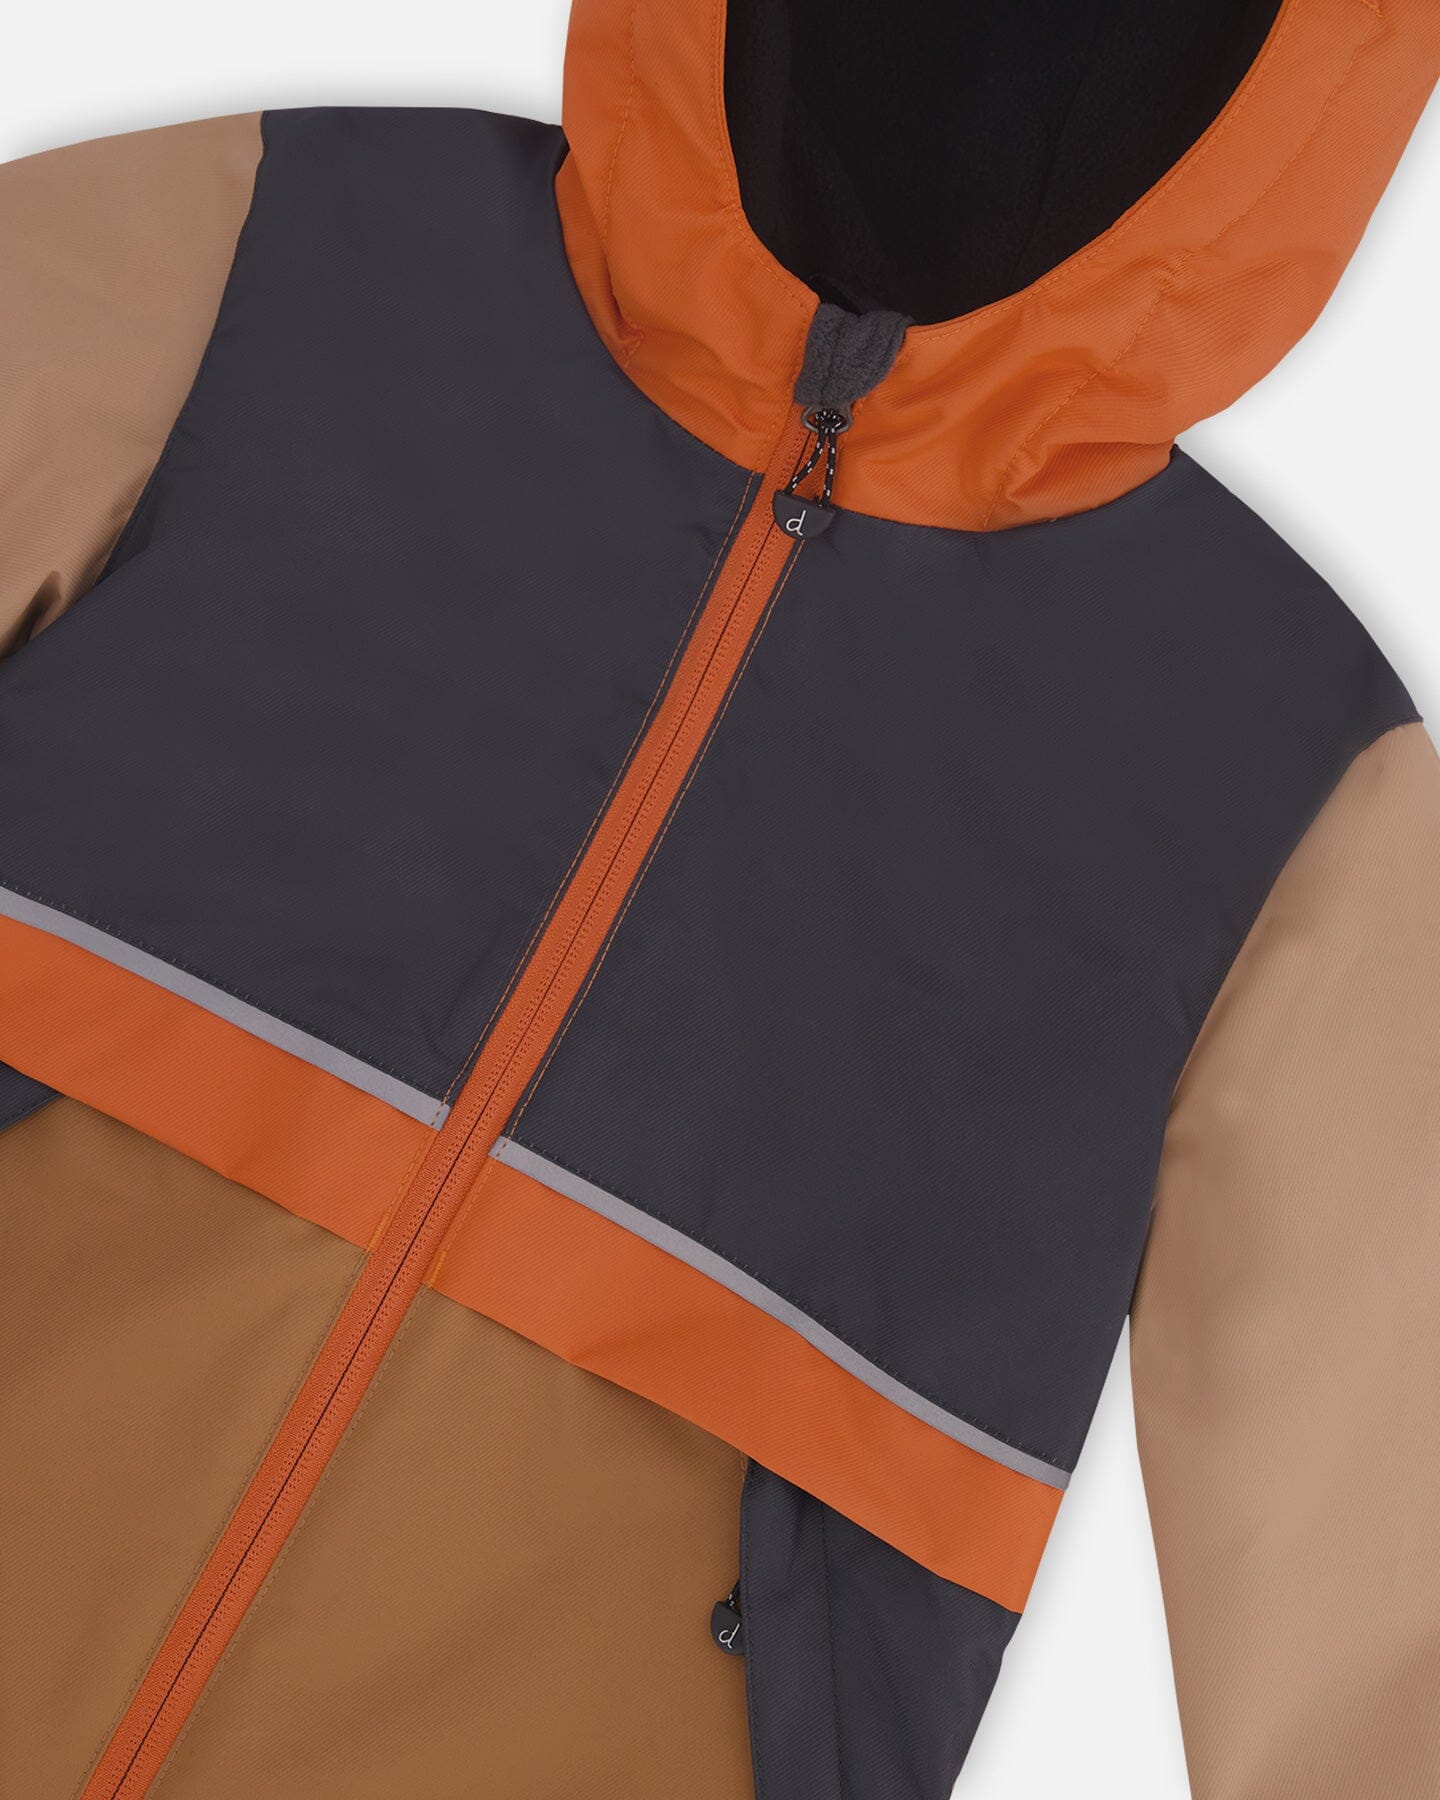 Two Piece Hooded Coat And Pant Mid-Season Set Colorblock Beige, Grey And Orange Outerwear Deux par Deux 